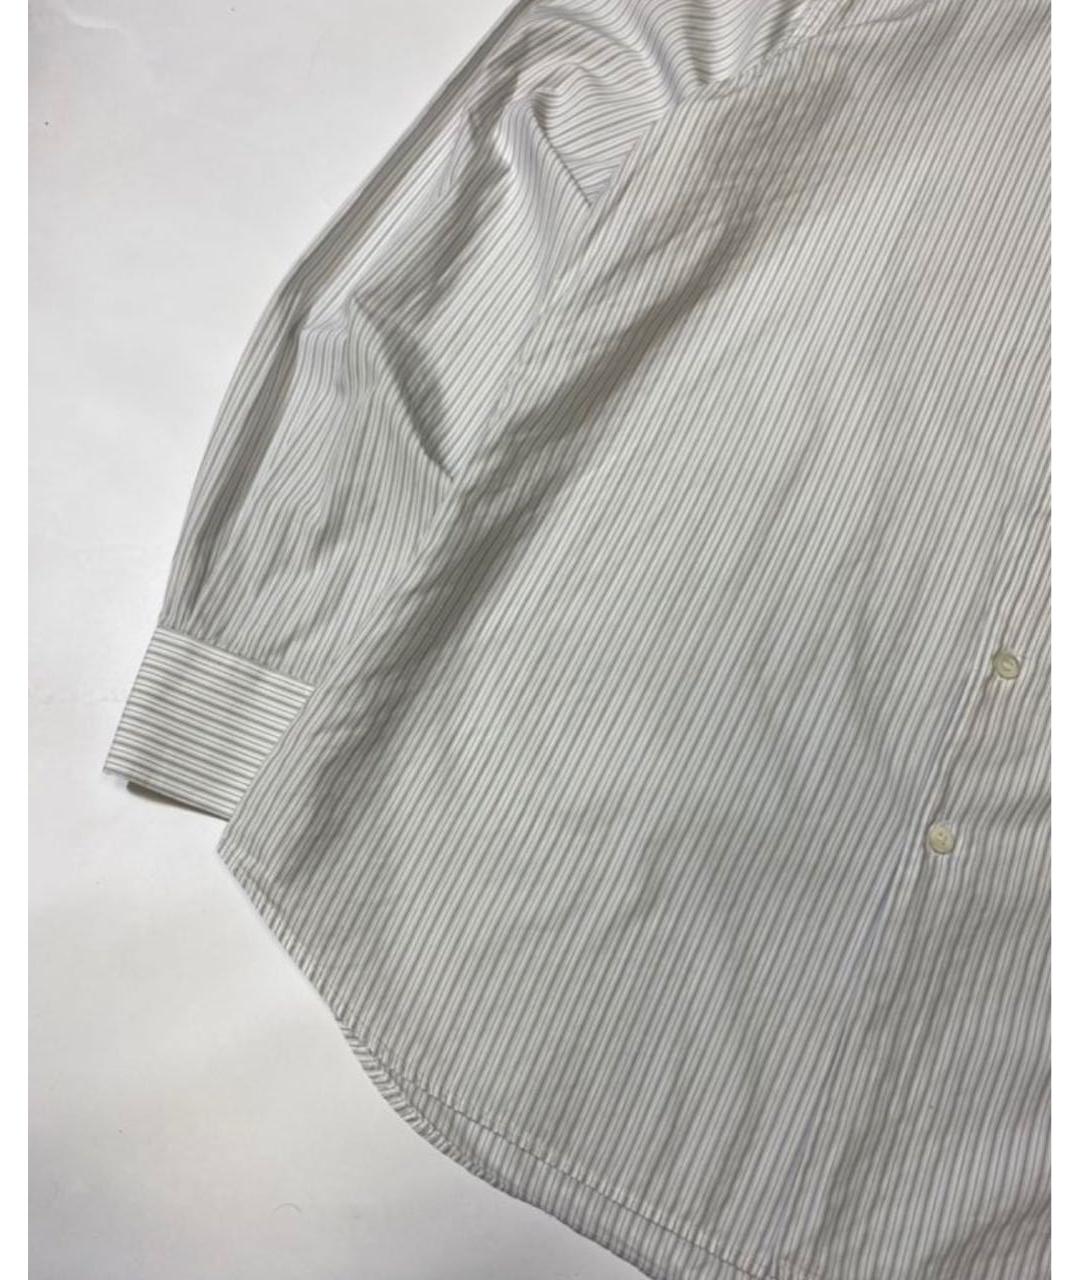 PRADA Белая хлопковая классическая рубашка, фото 4